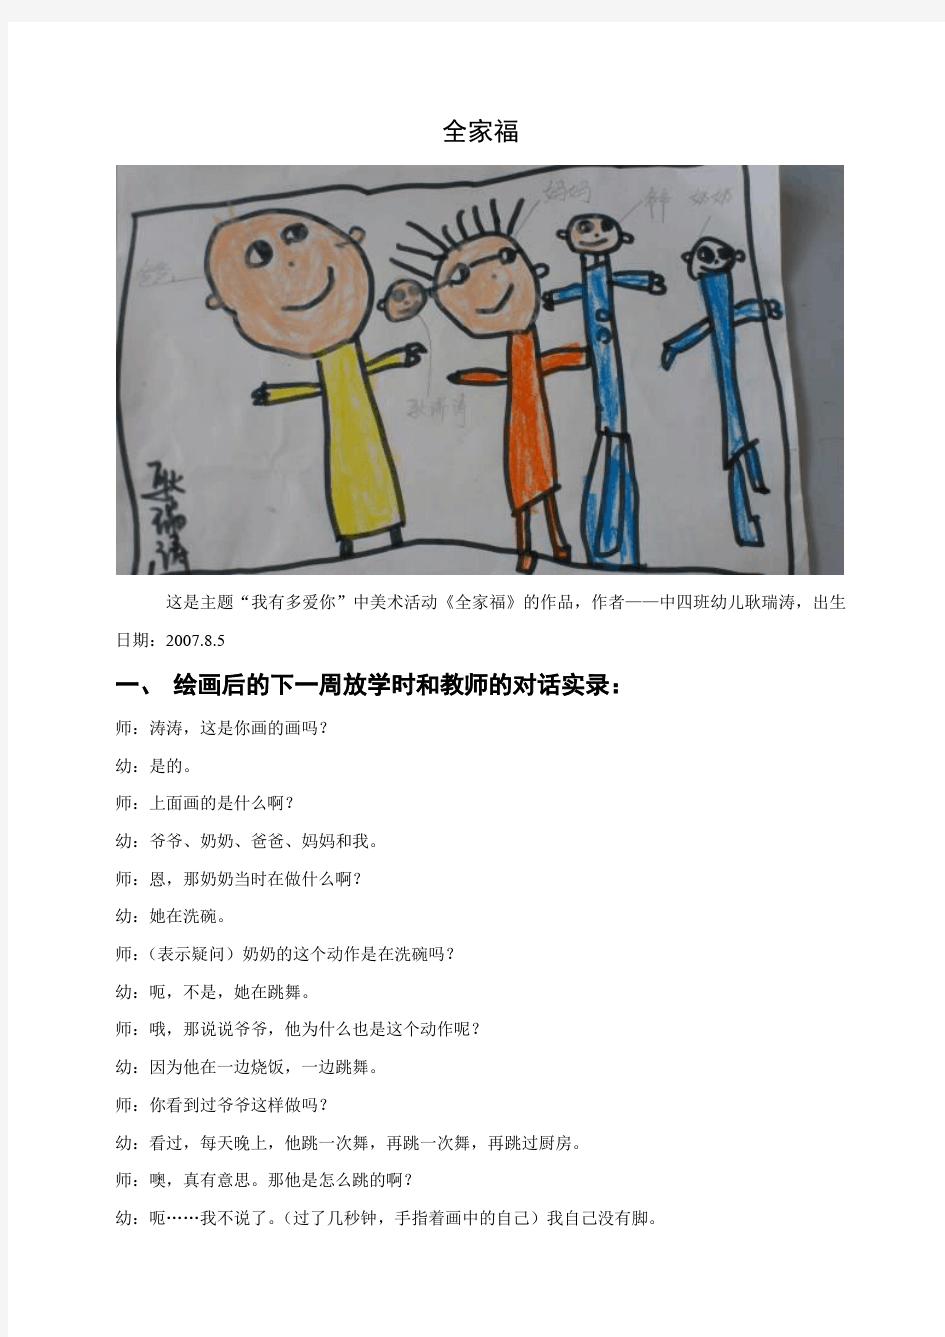 幼儿园儿童绘画作品分析解读案例(全家福)